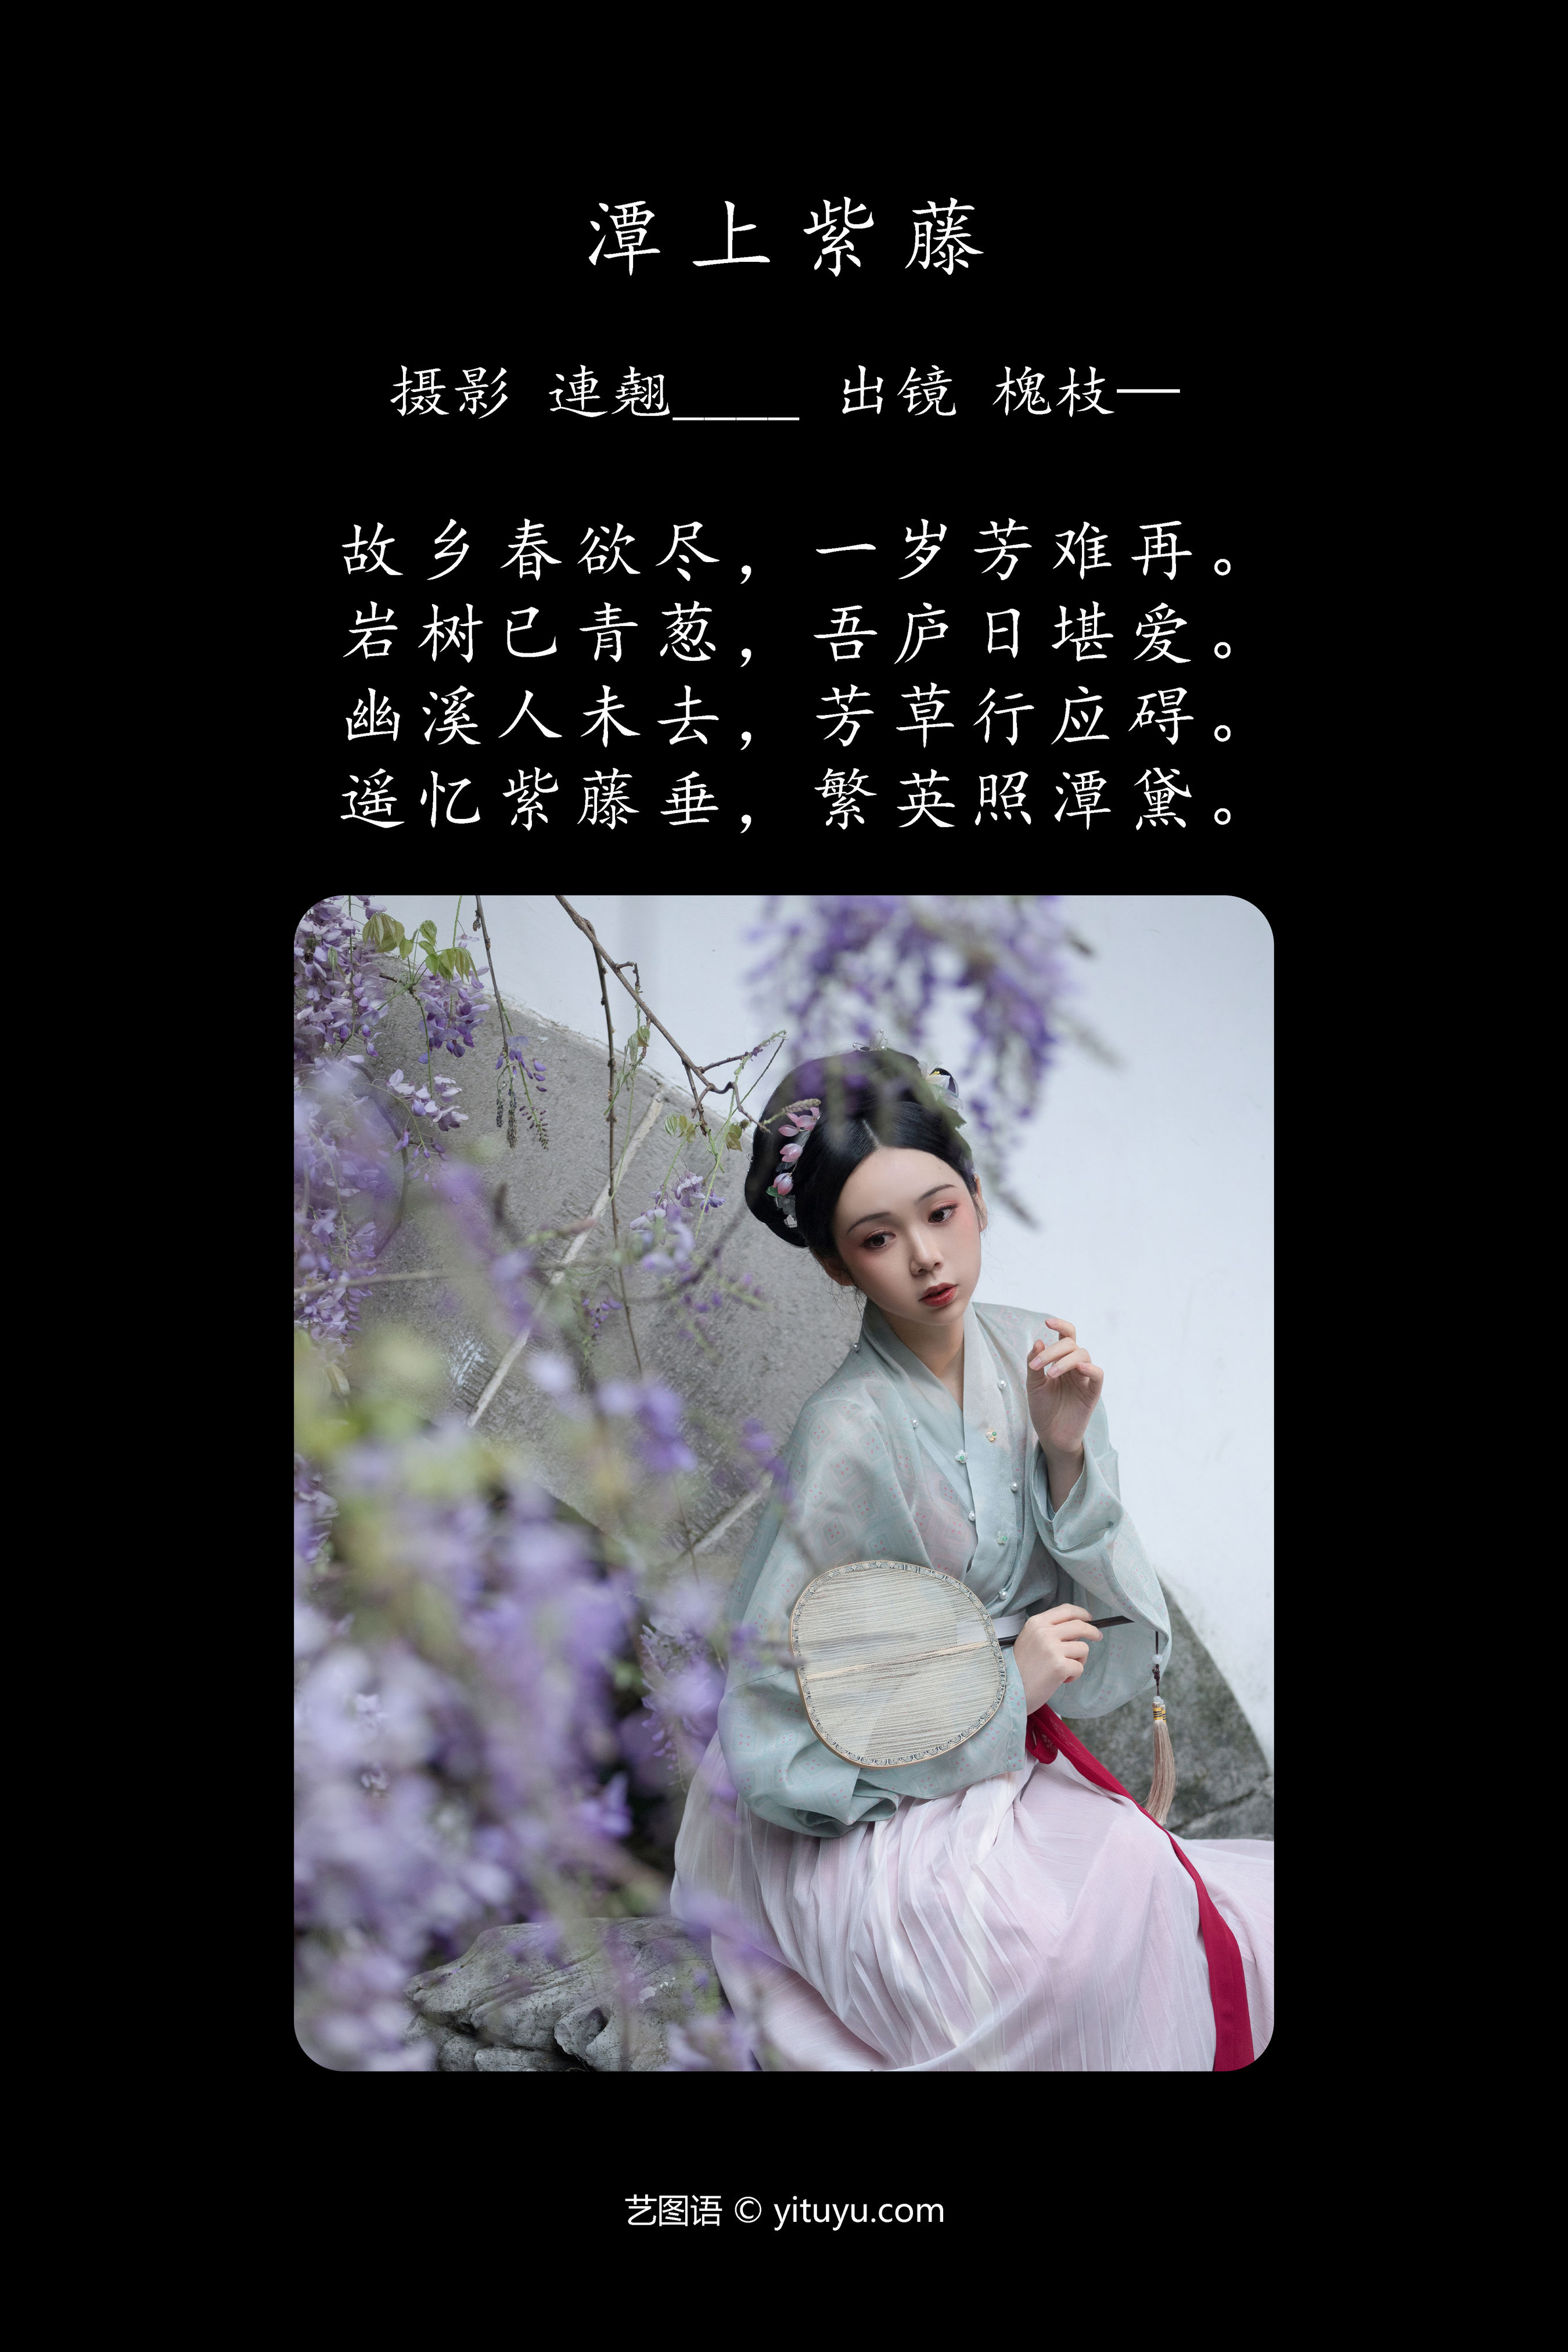 潭上紫藤 古装 汉服 美人 模特 意境 美图 中国风 养眼 艺术